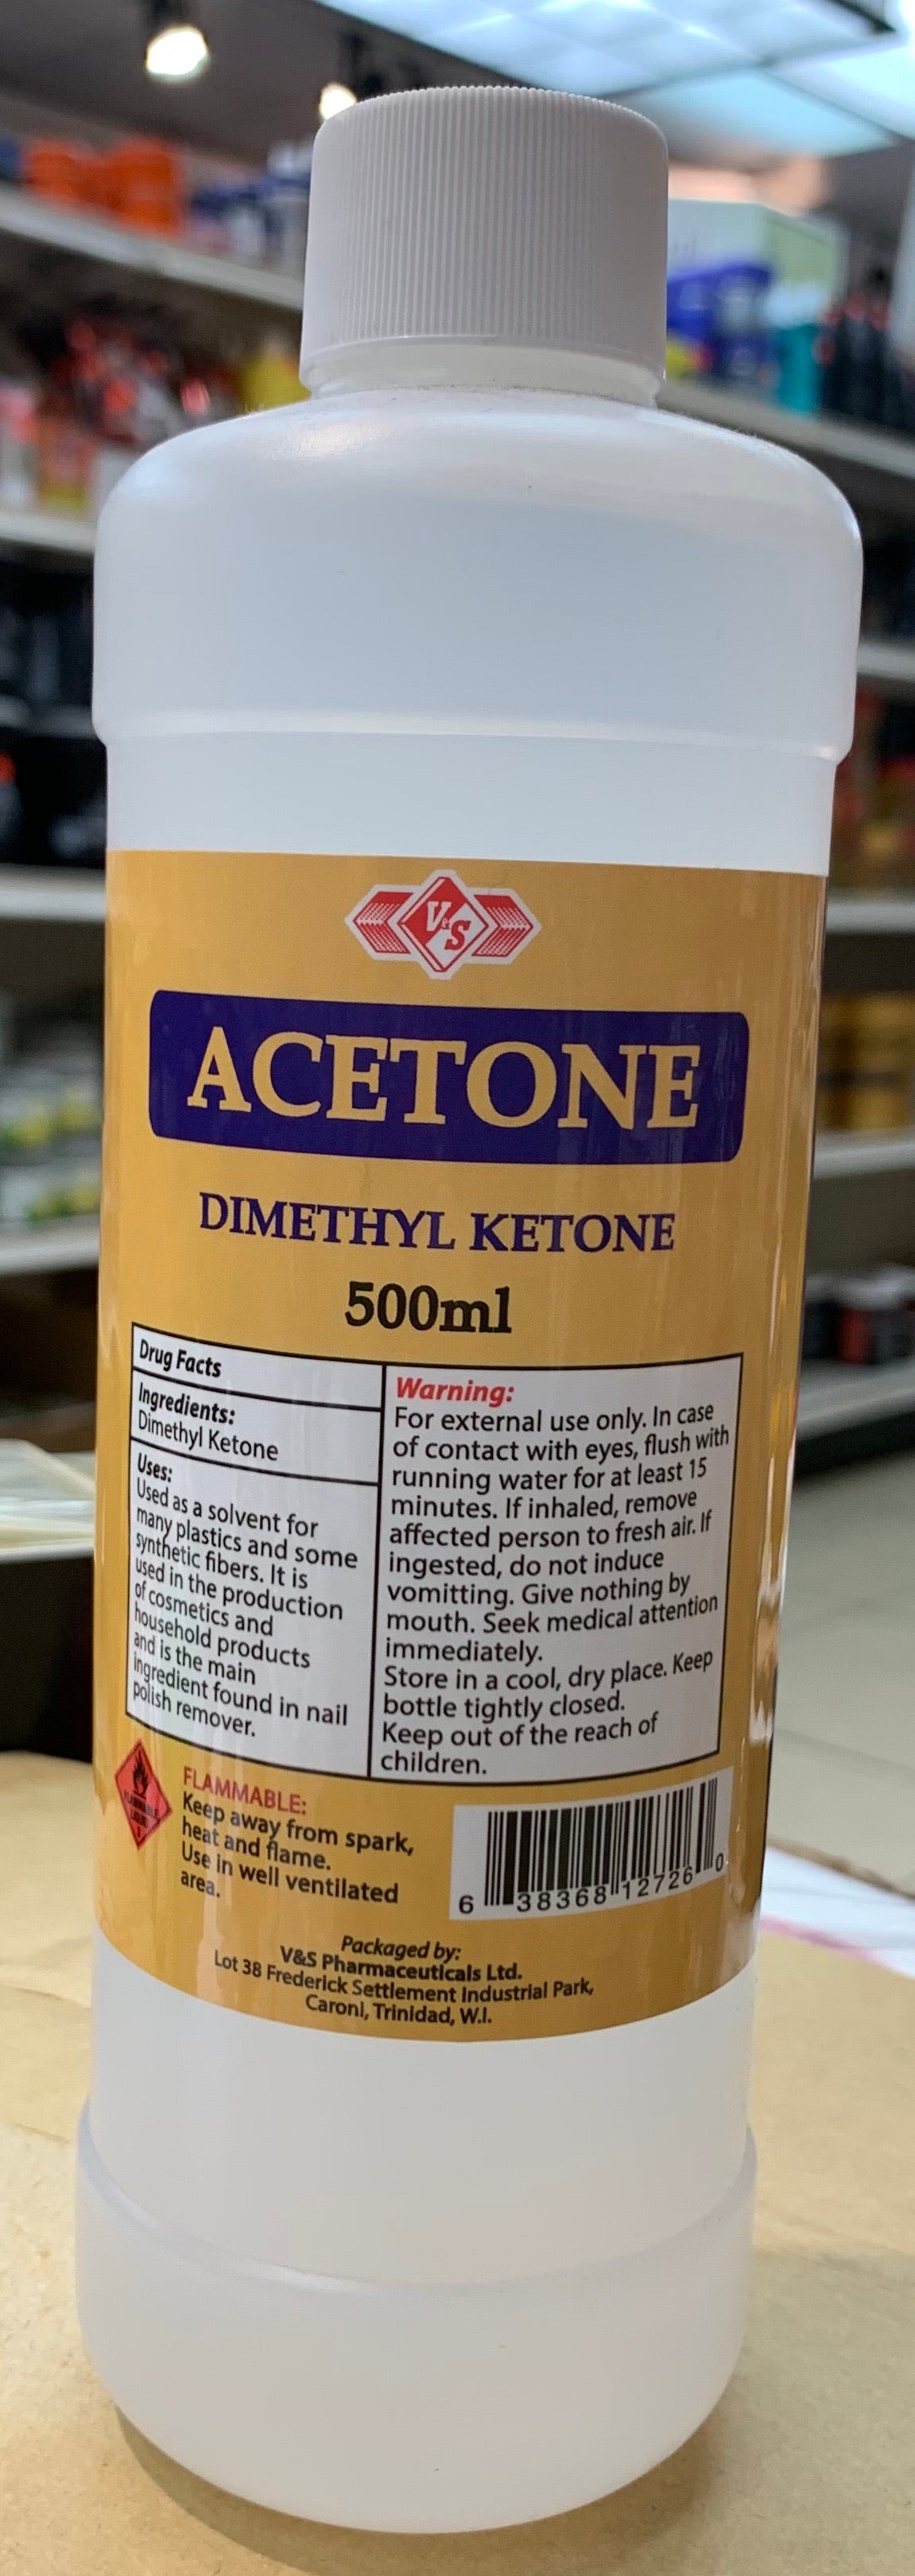 V&s Acetone 250/500ml